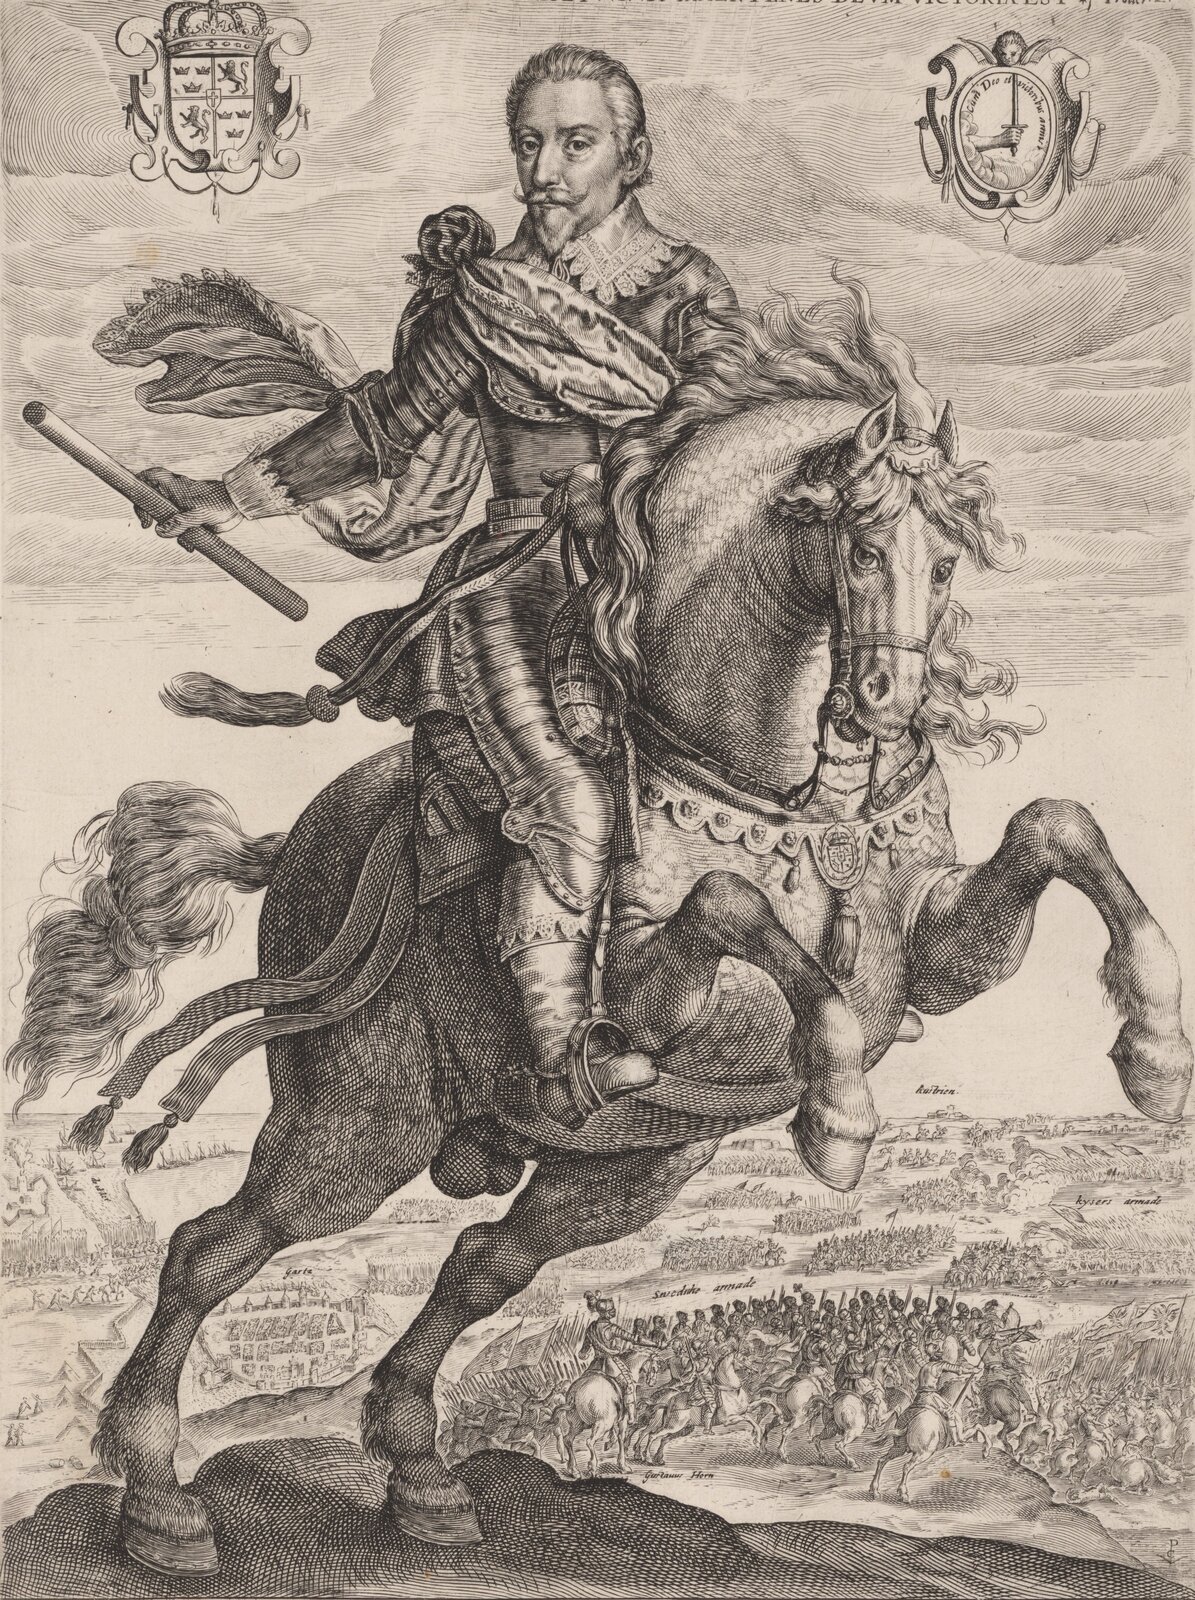 Portret konny Gustawa Adolfa, króla Szwecji. Król trzyma w ręku buławę, będącą świadectwem jego przywództwa wojskowego. Koń staje dęba. W tle bitwa.